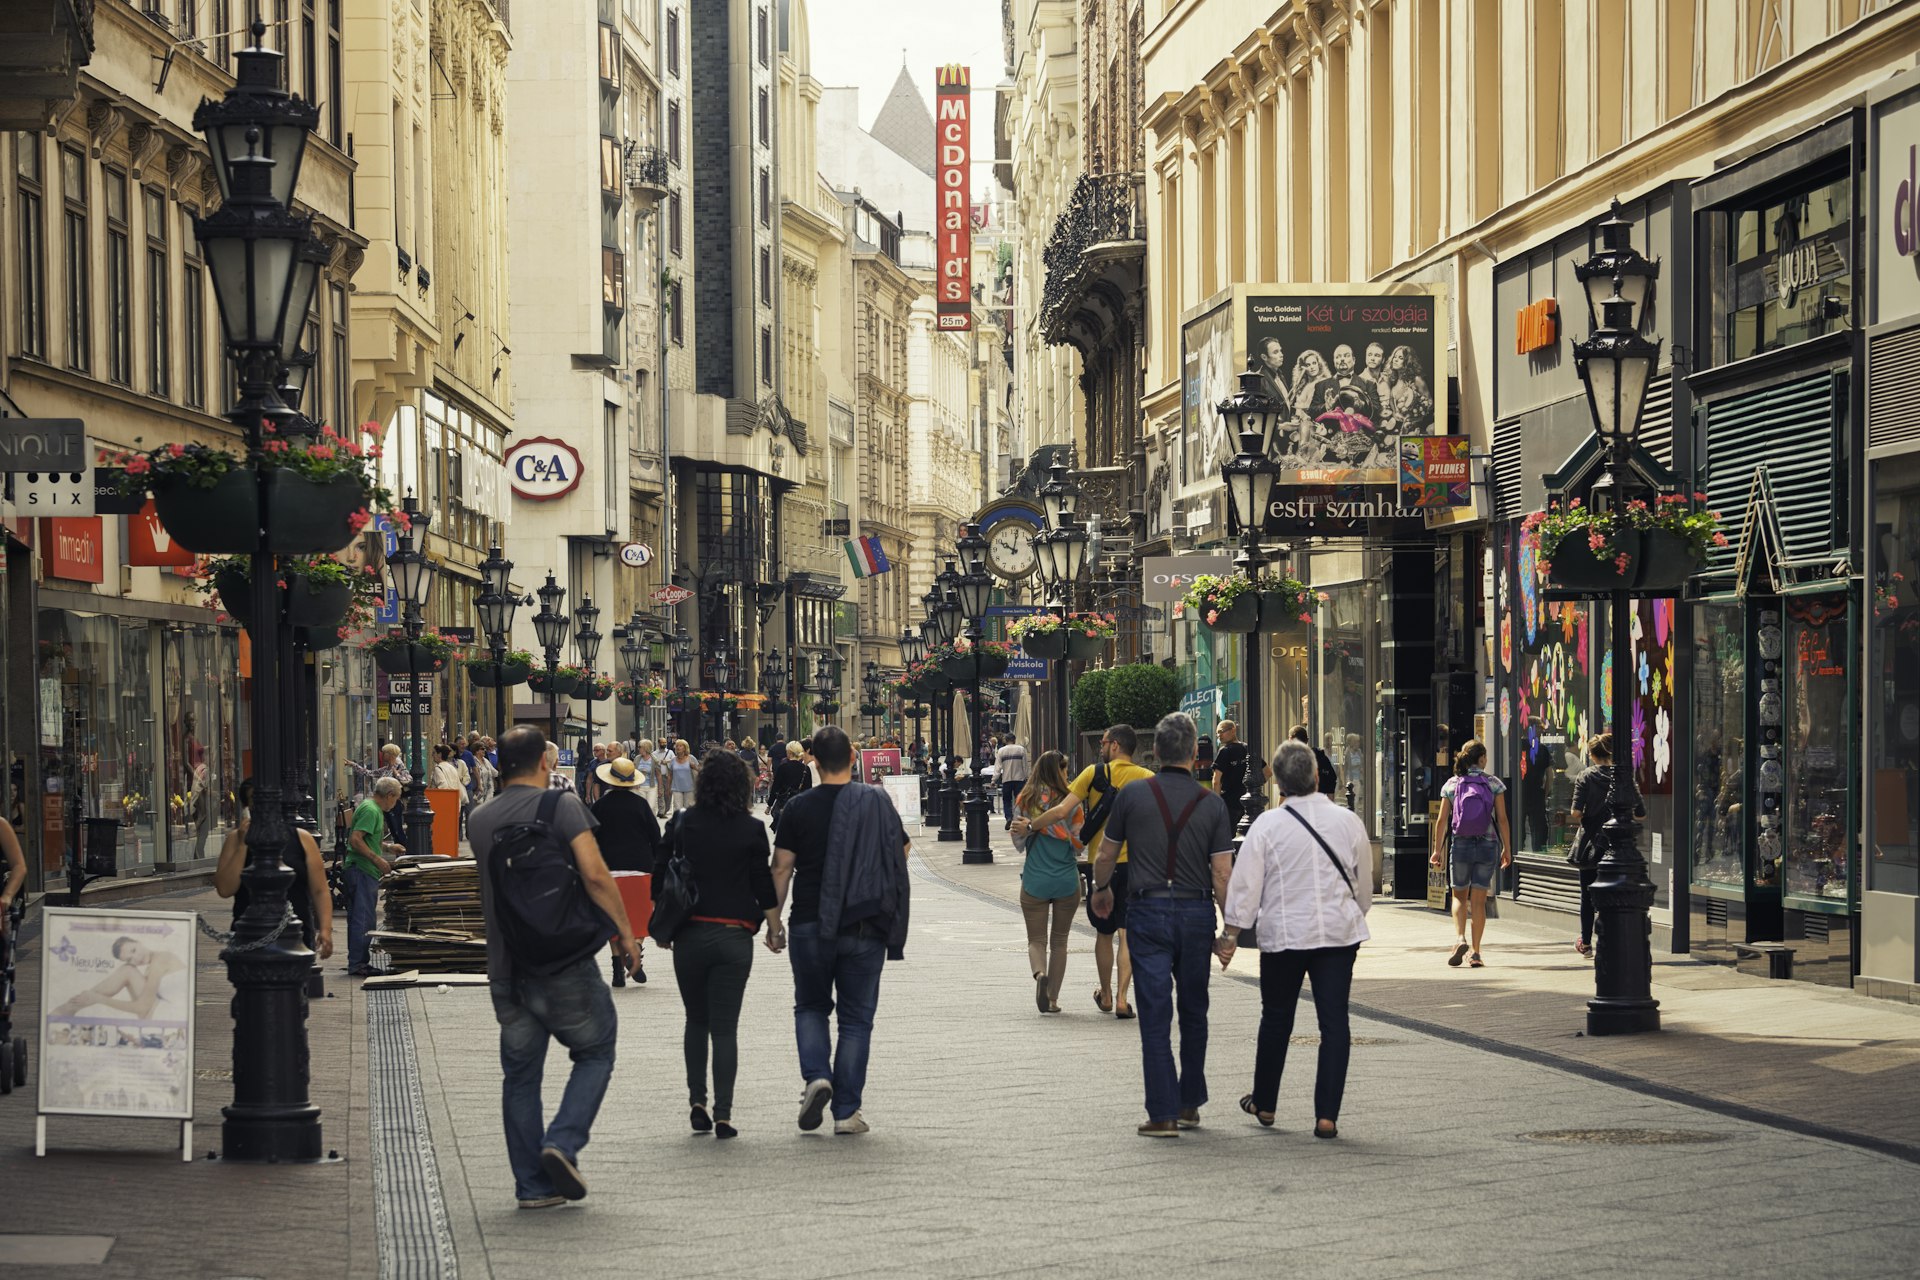 People walking on Vaci utca in Budapest